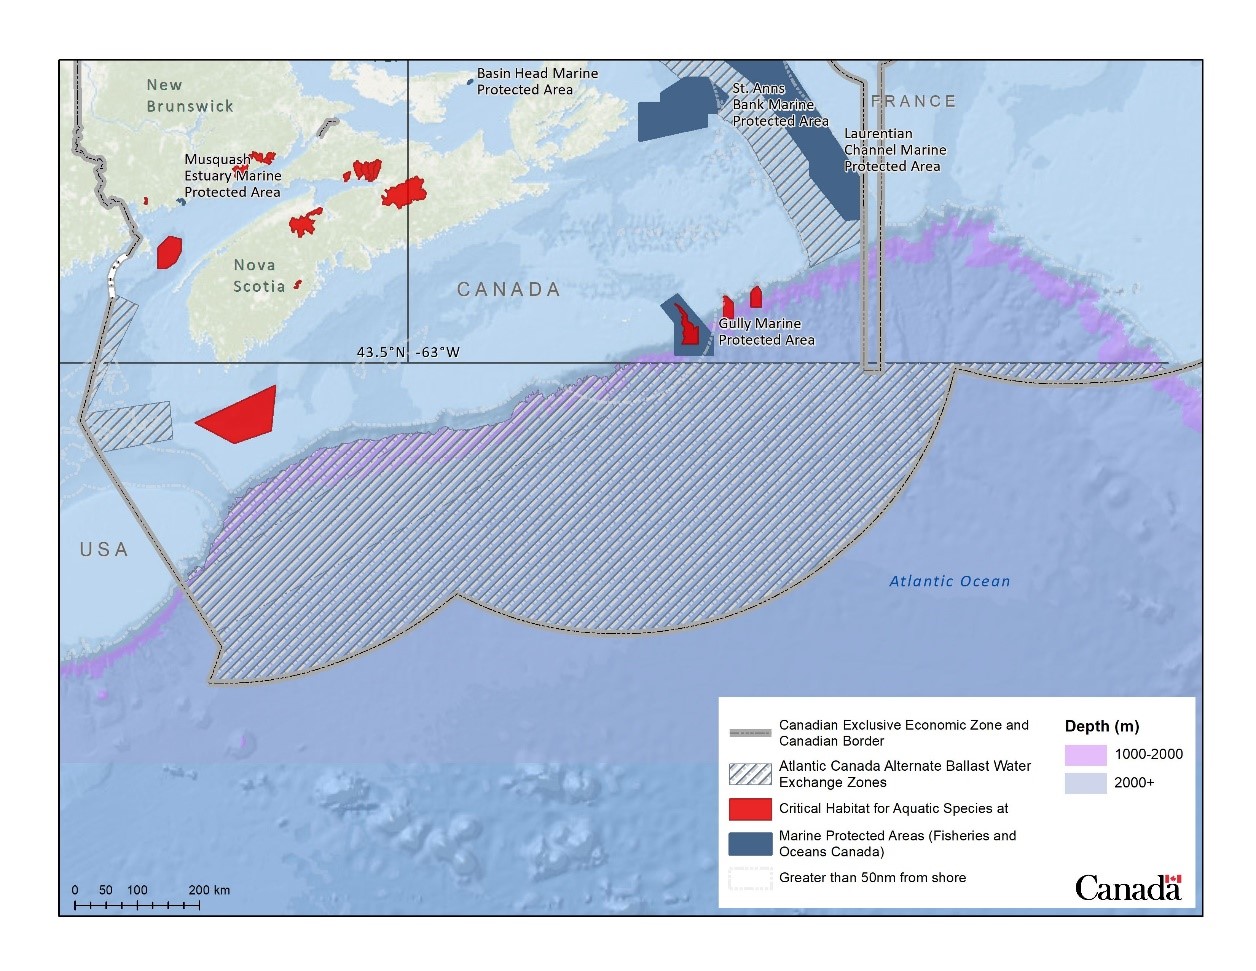 Figure 2. Designated Alternate Ballast Water Exchange Areas in Atlantic Canada.